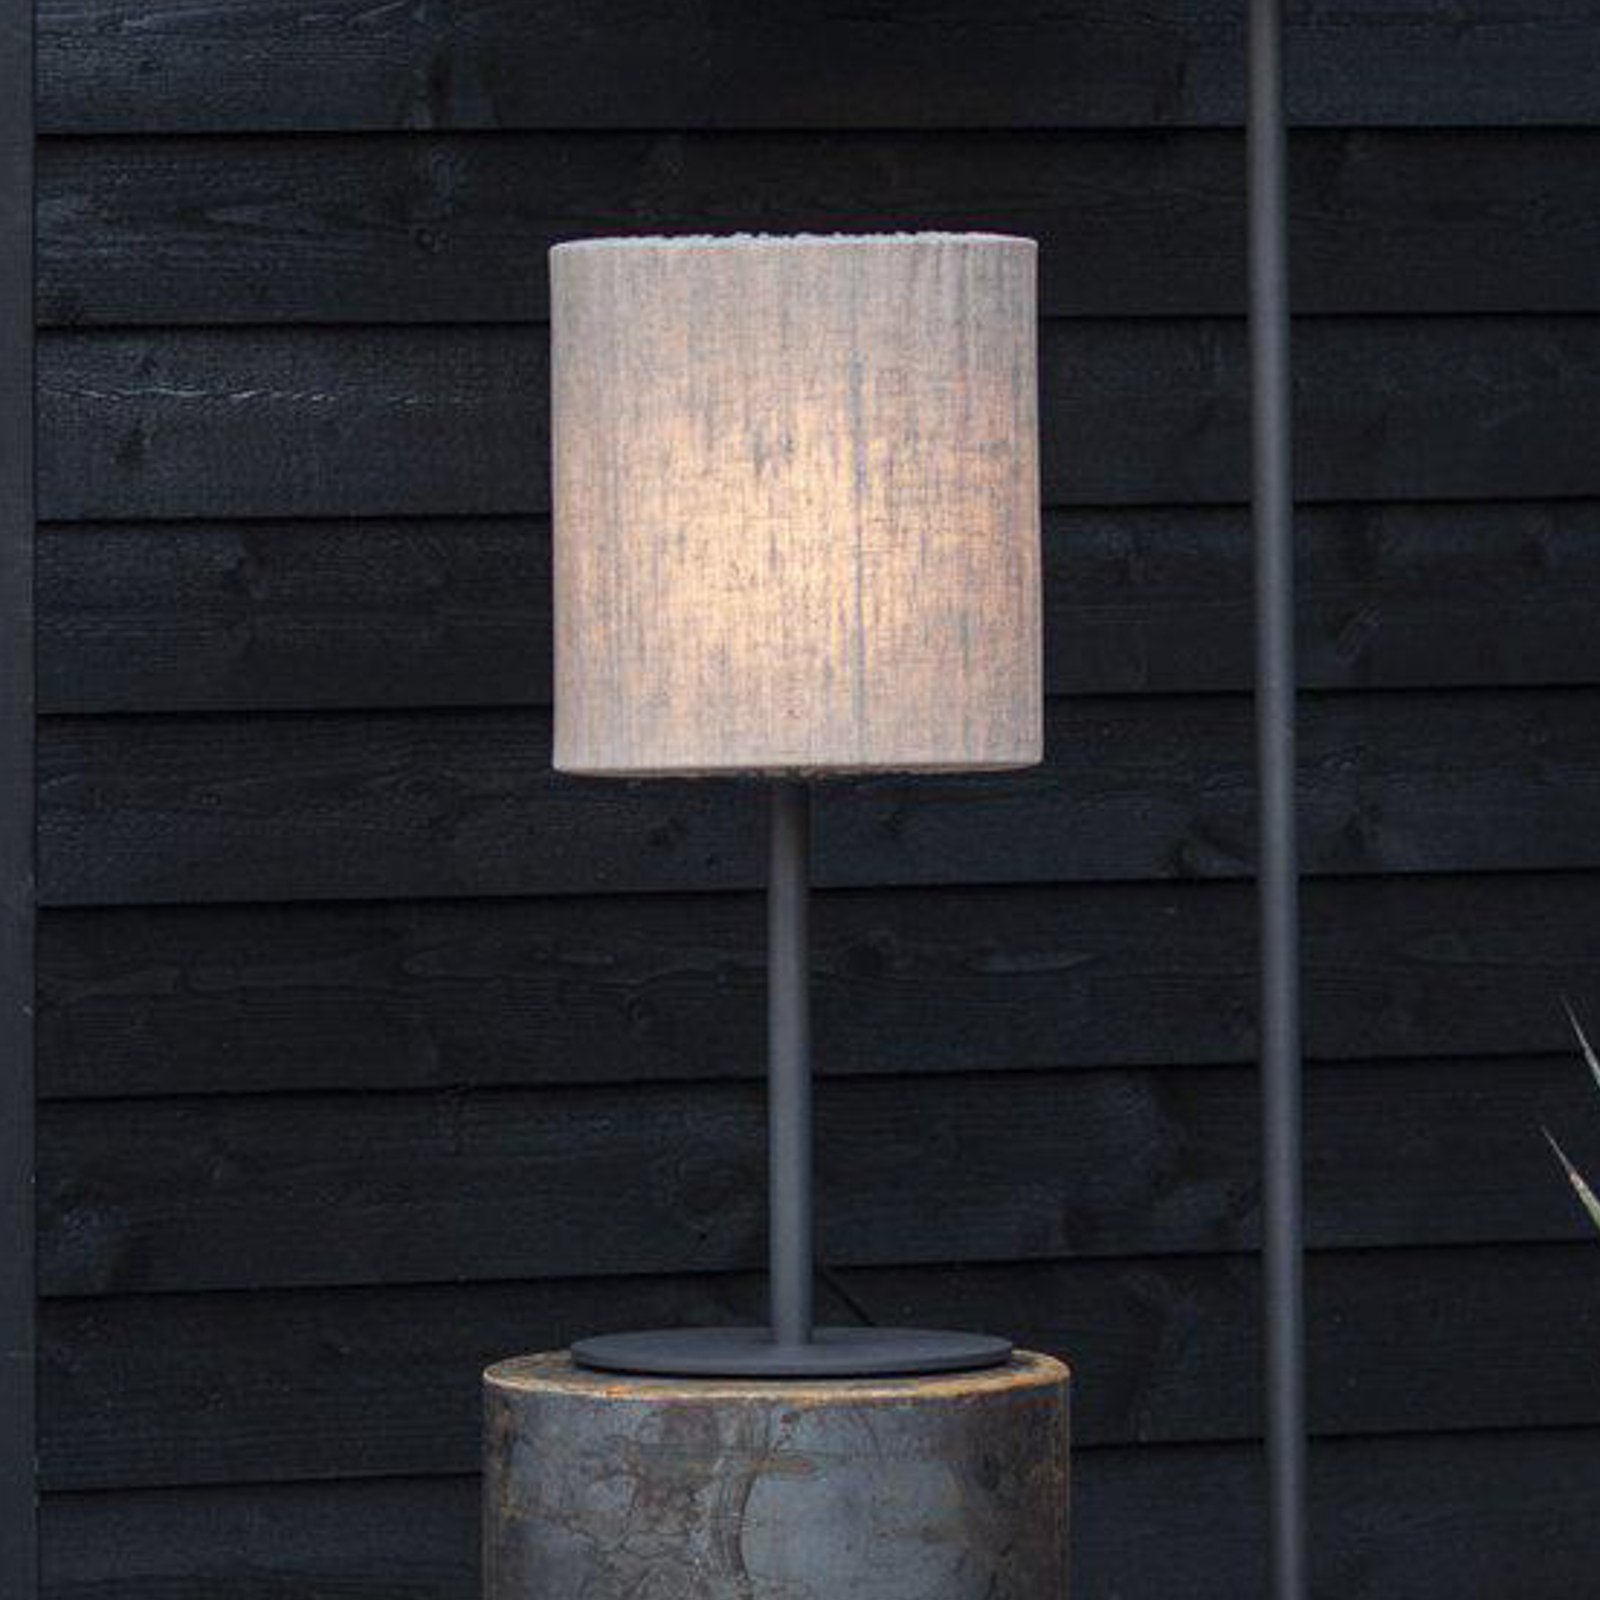 PR Home venkovní stolní lampa Agnar, tmavě šedá / bílá, 57 cm